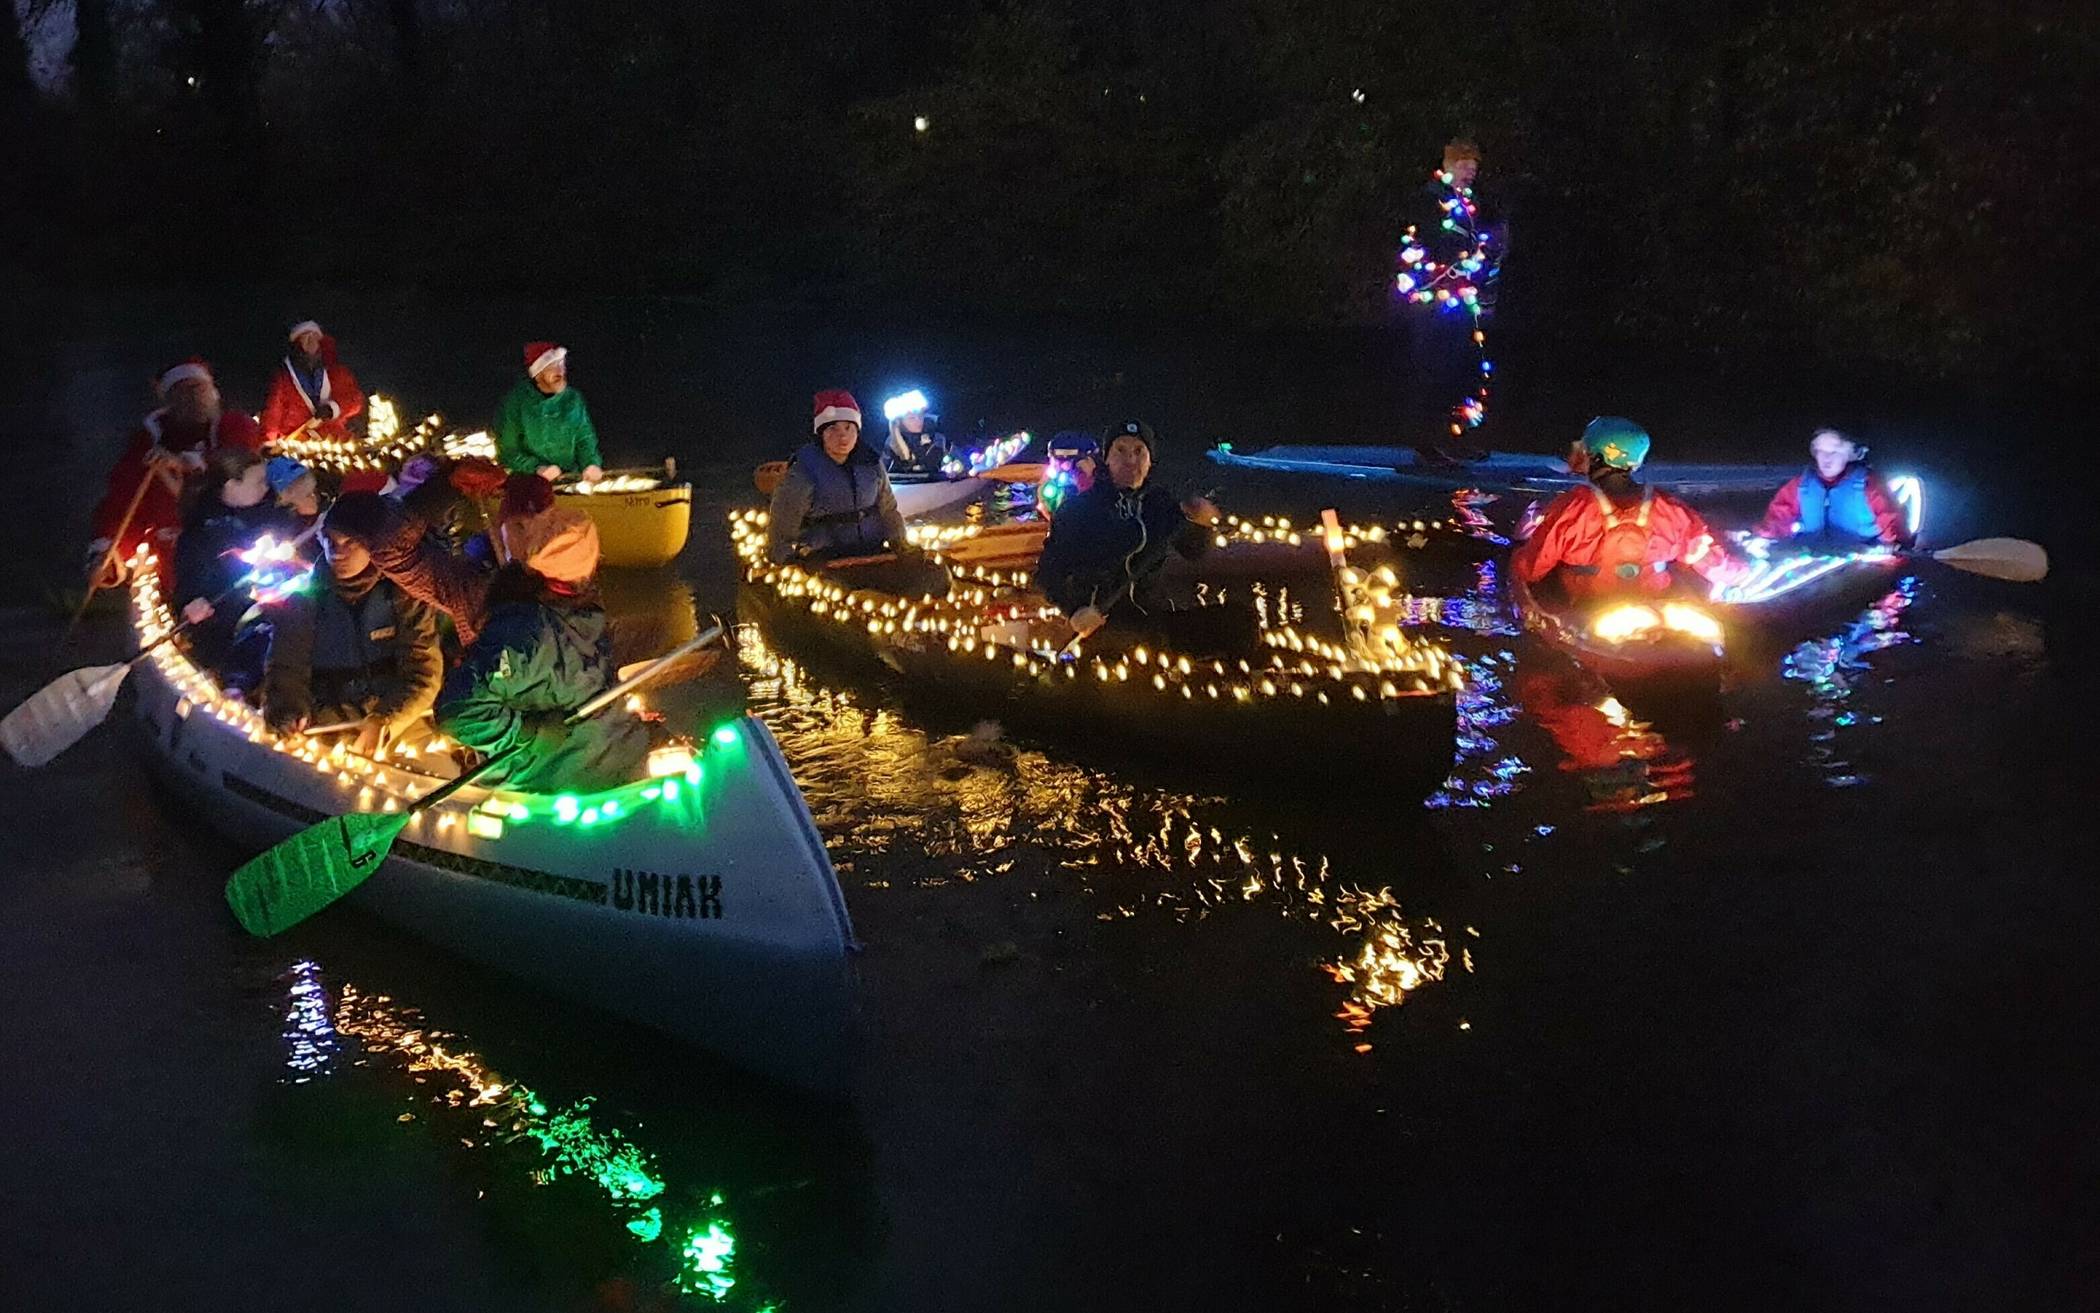 Weihnachts-Paddeln auf der Erft: In festlich geschmückten Booten ging es für die Paddler des Kanu-Clubs vom Vereinsheim bis zur Neuenhausener Brücke.   